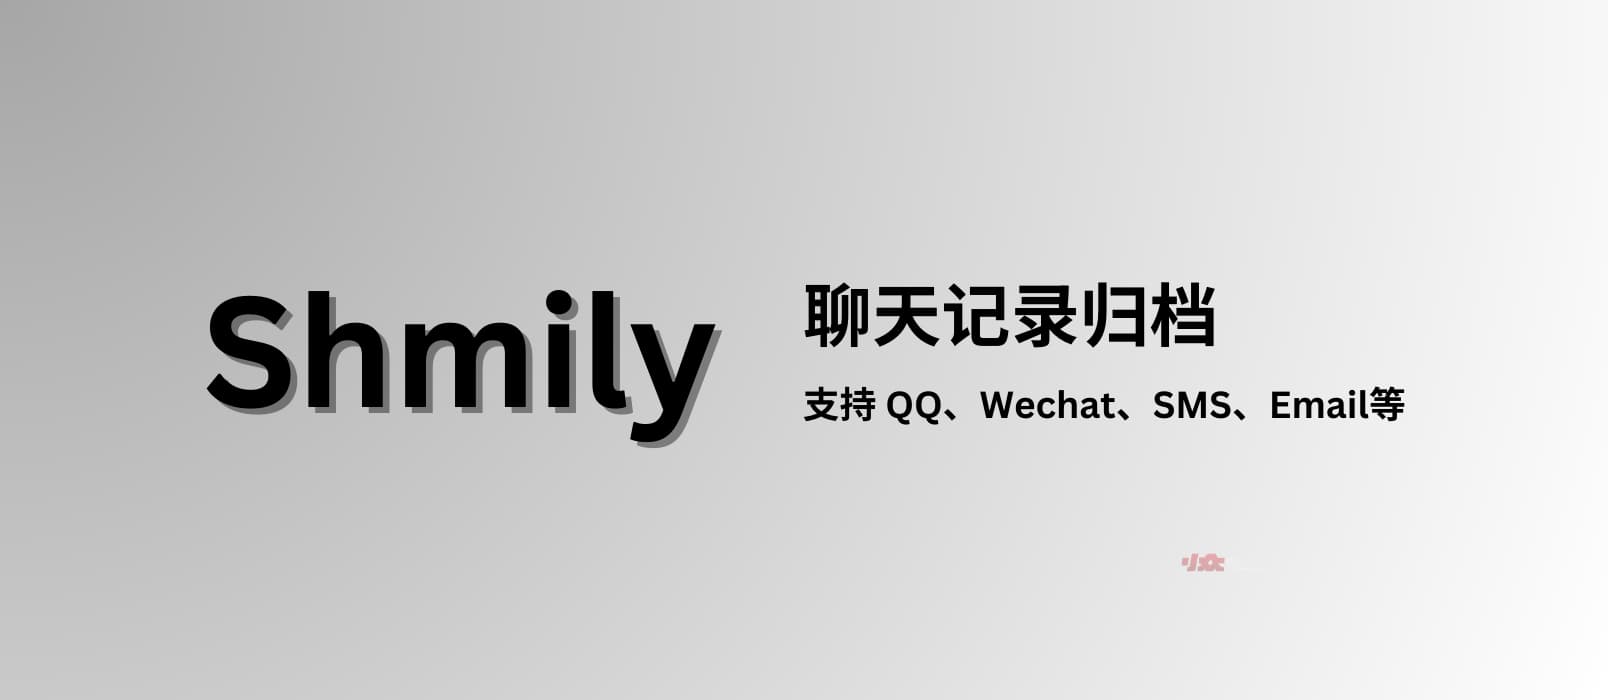 Shmily - 聊天记录归档，支持 QQ、WeChat、SMS、Email 等